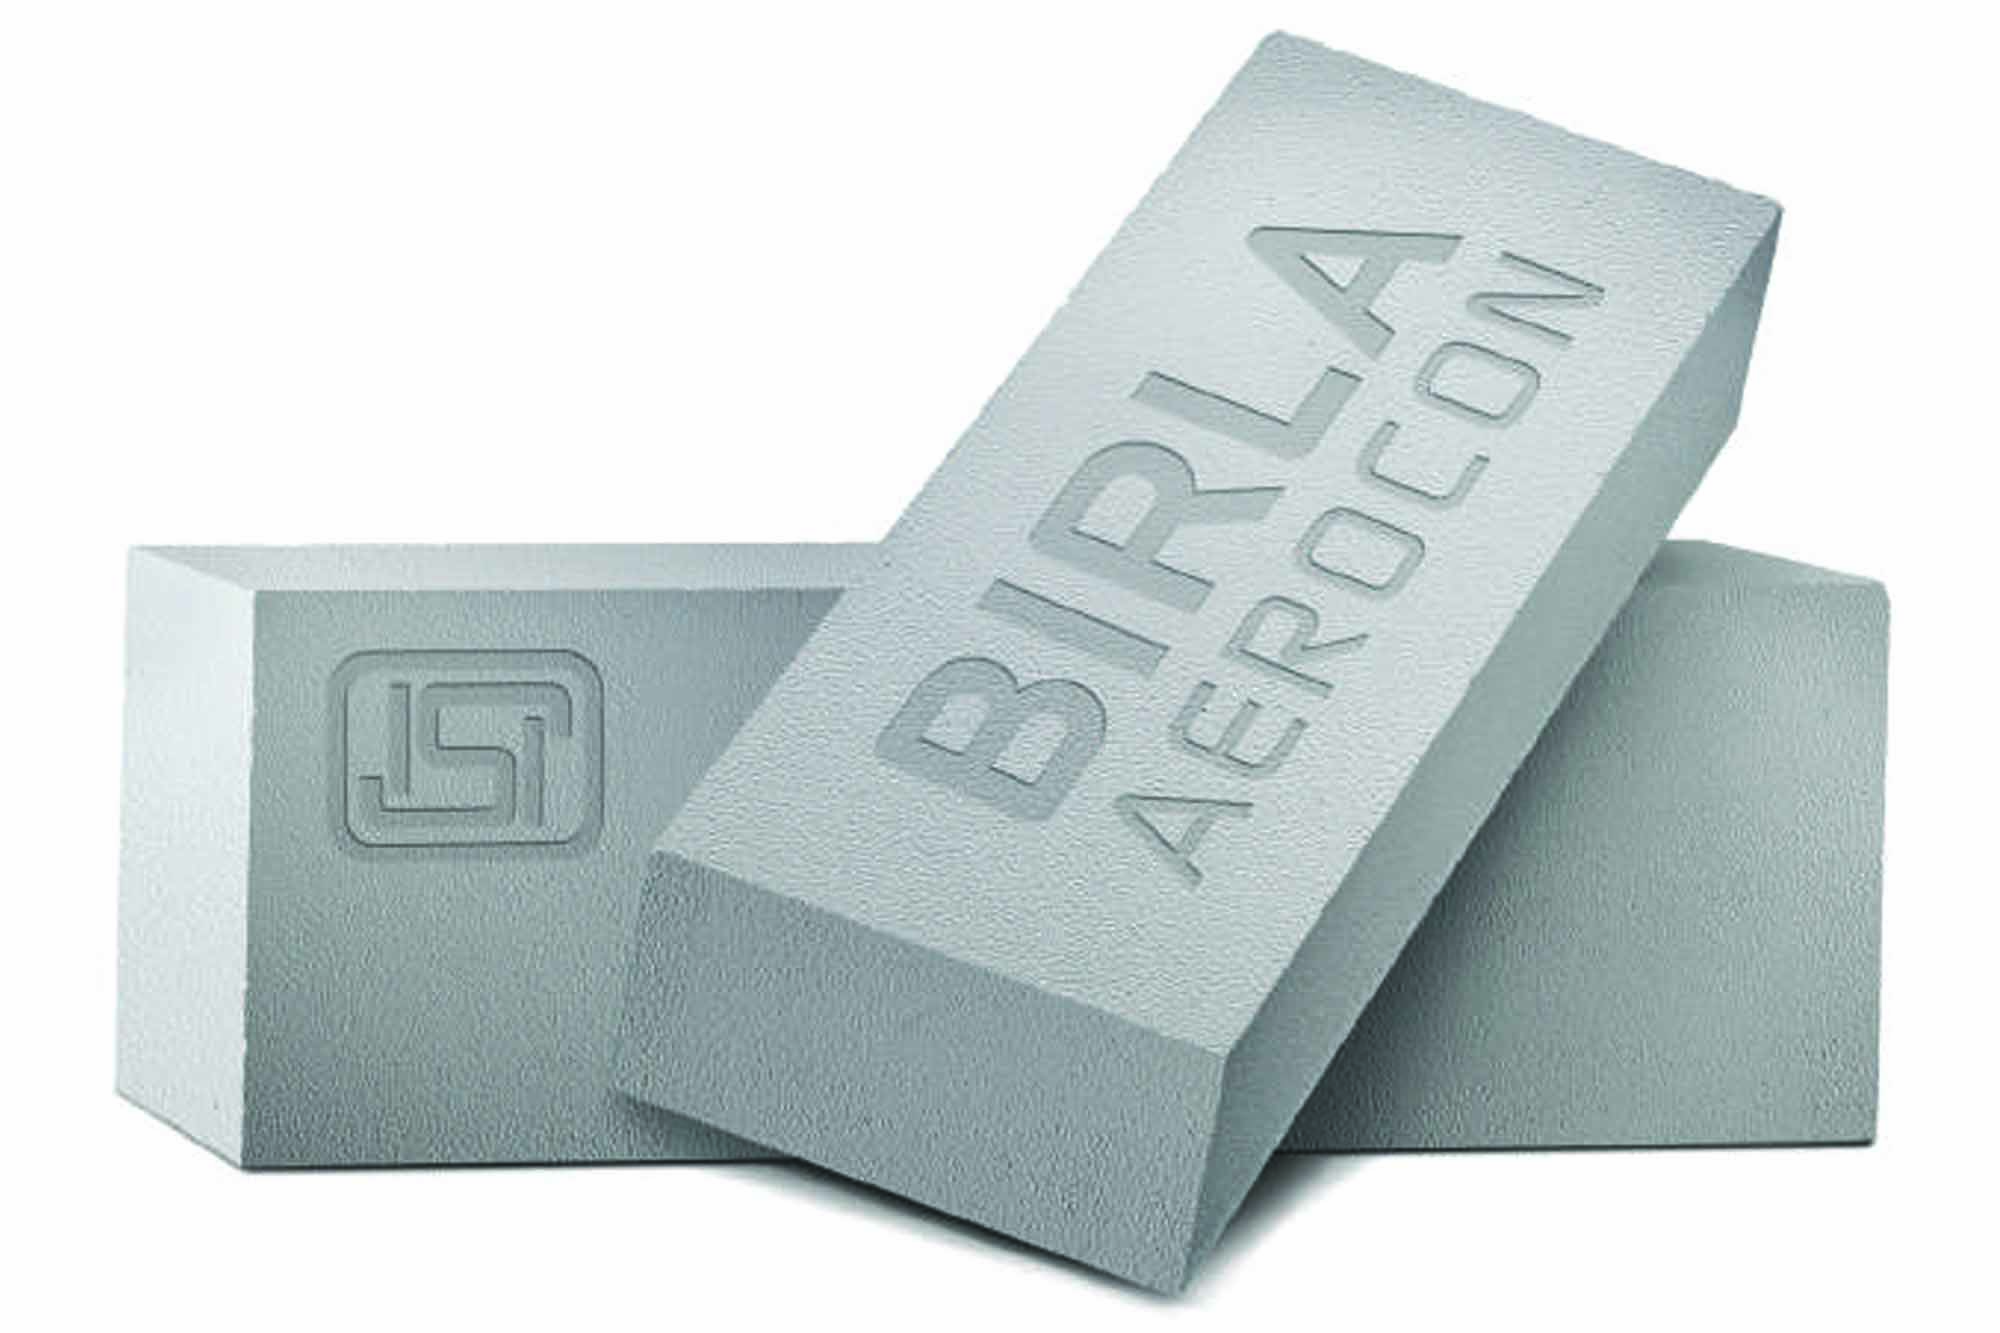 Birla Aerocon AAC Blocks